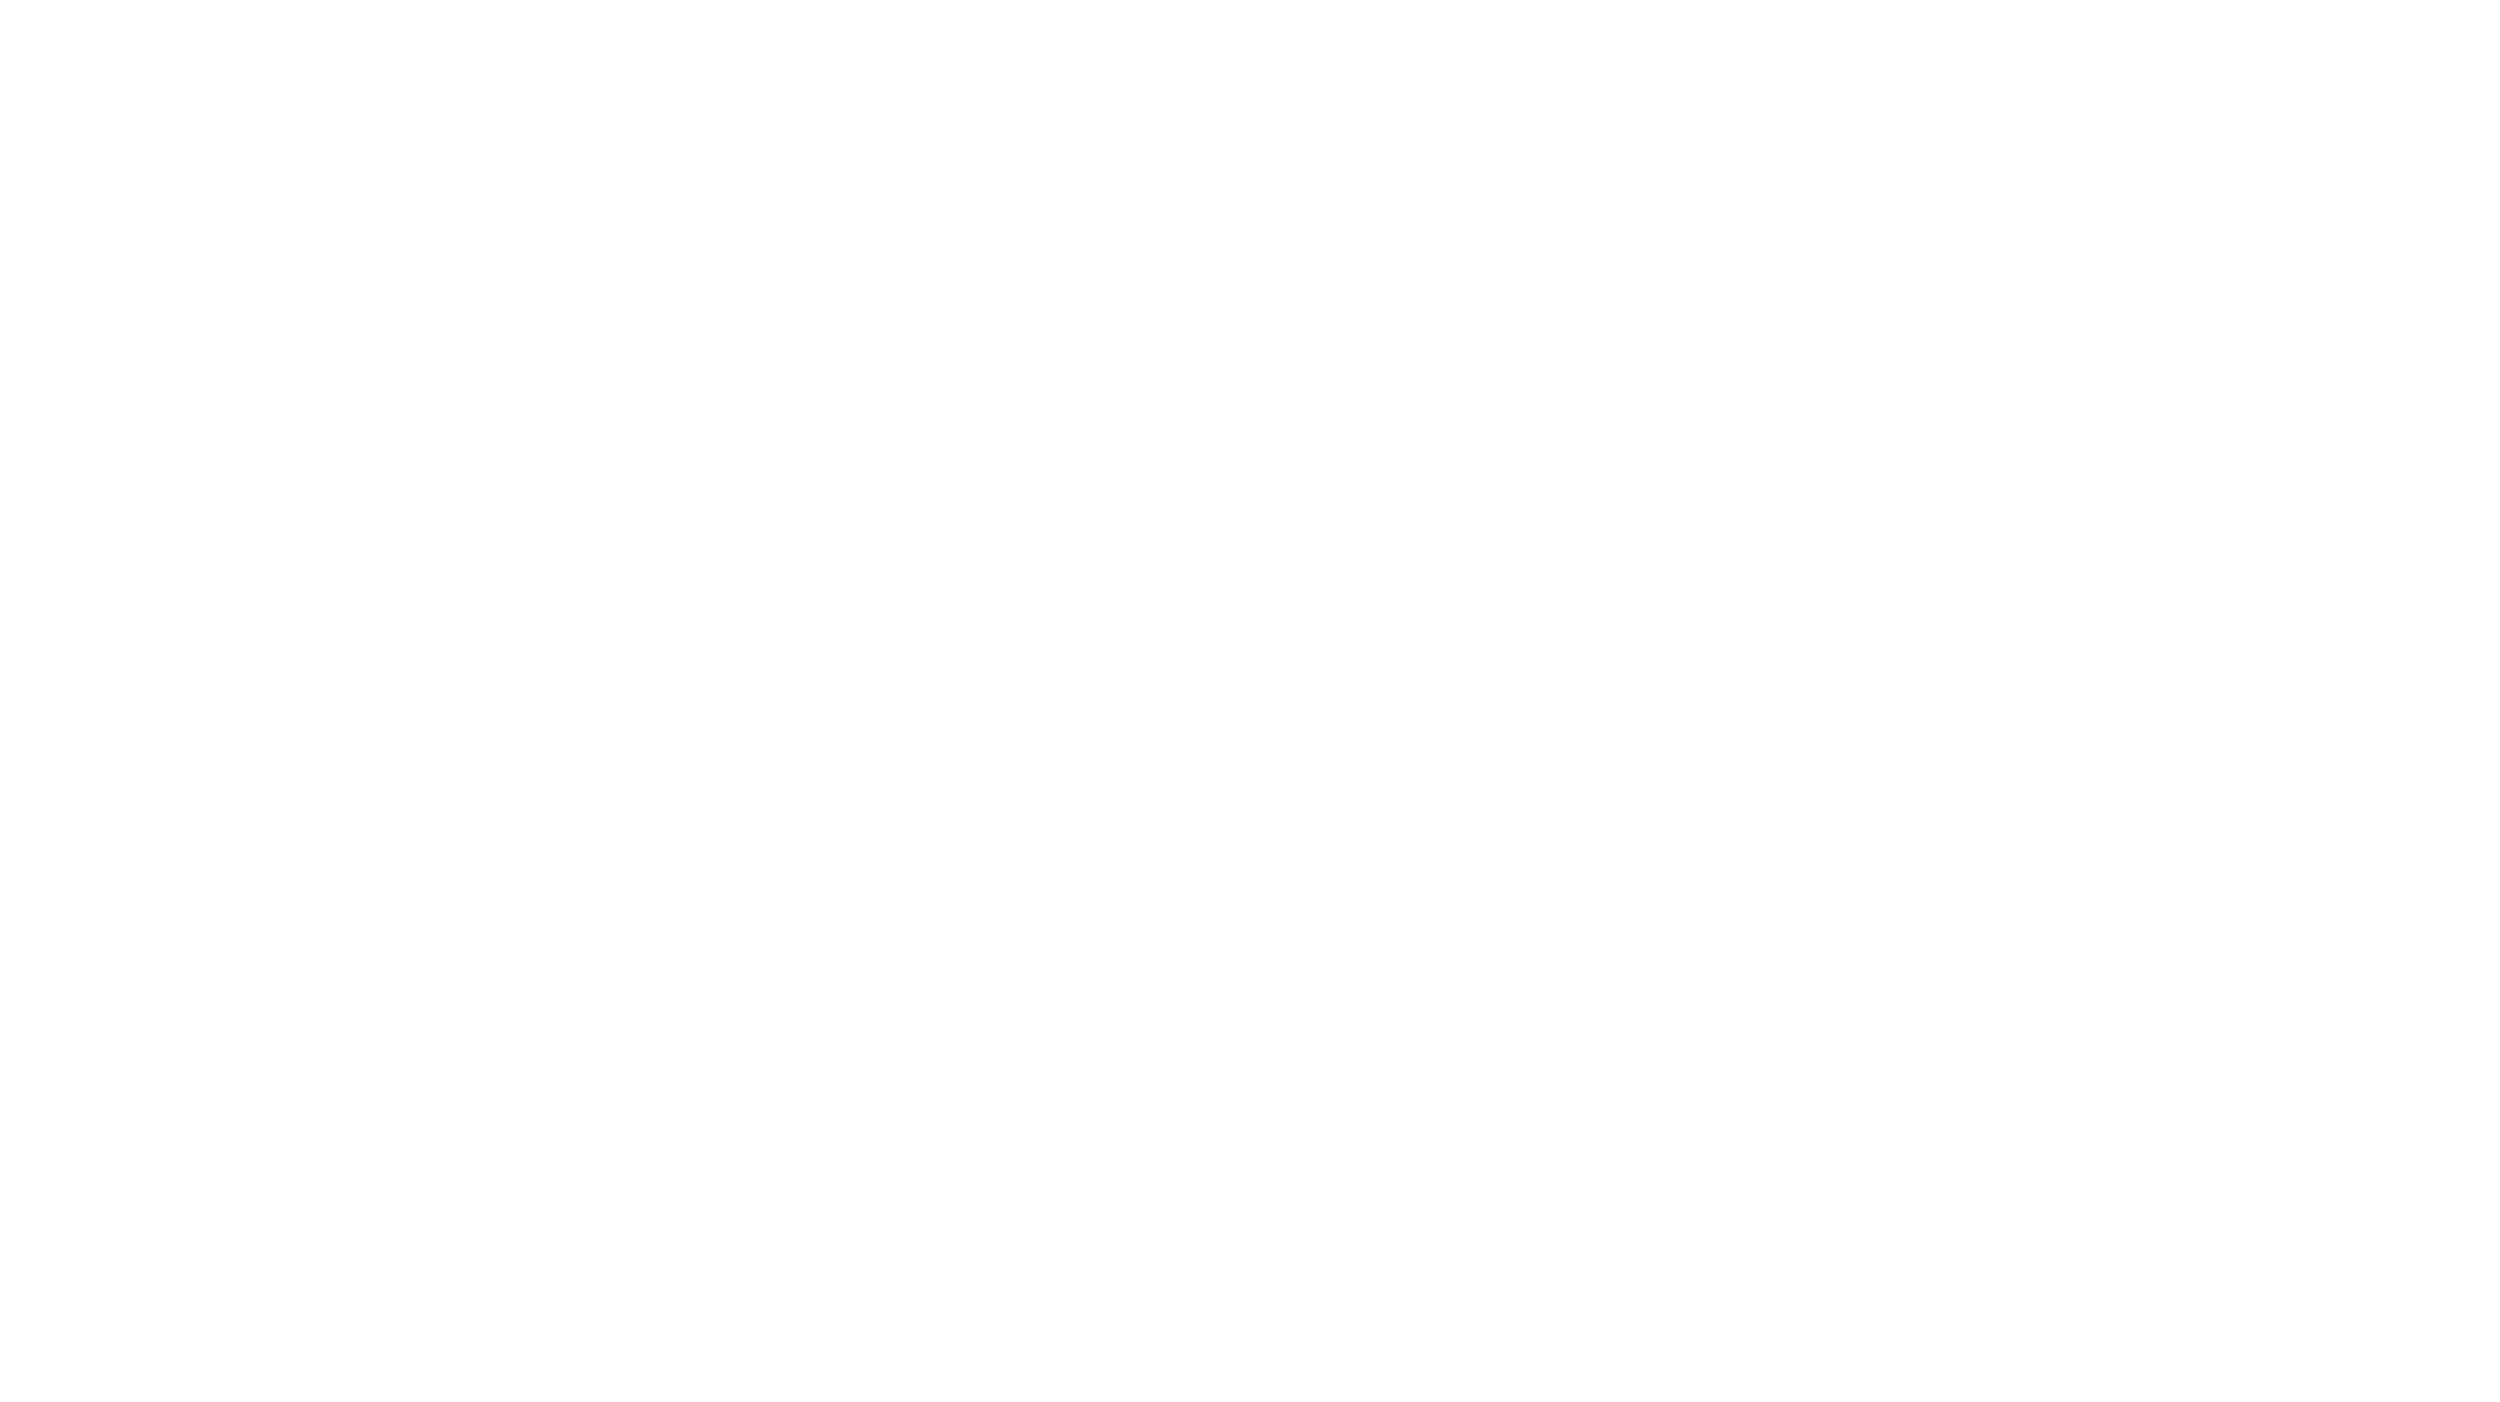 TORONTOHYE_logo.png